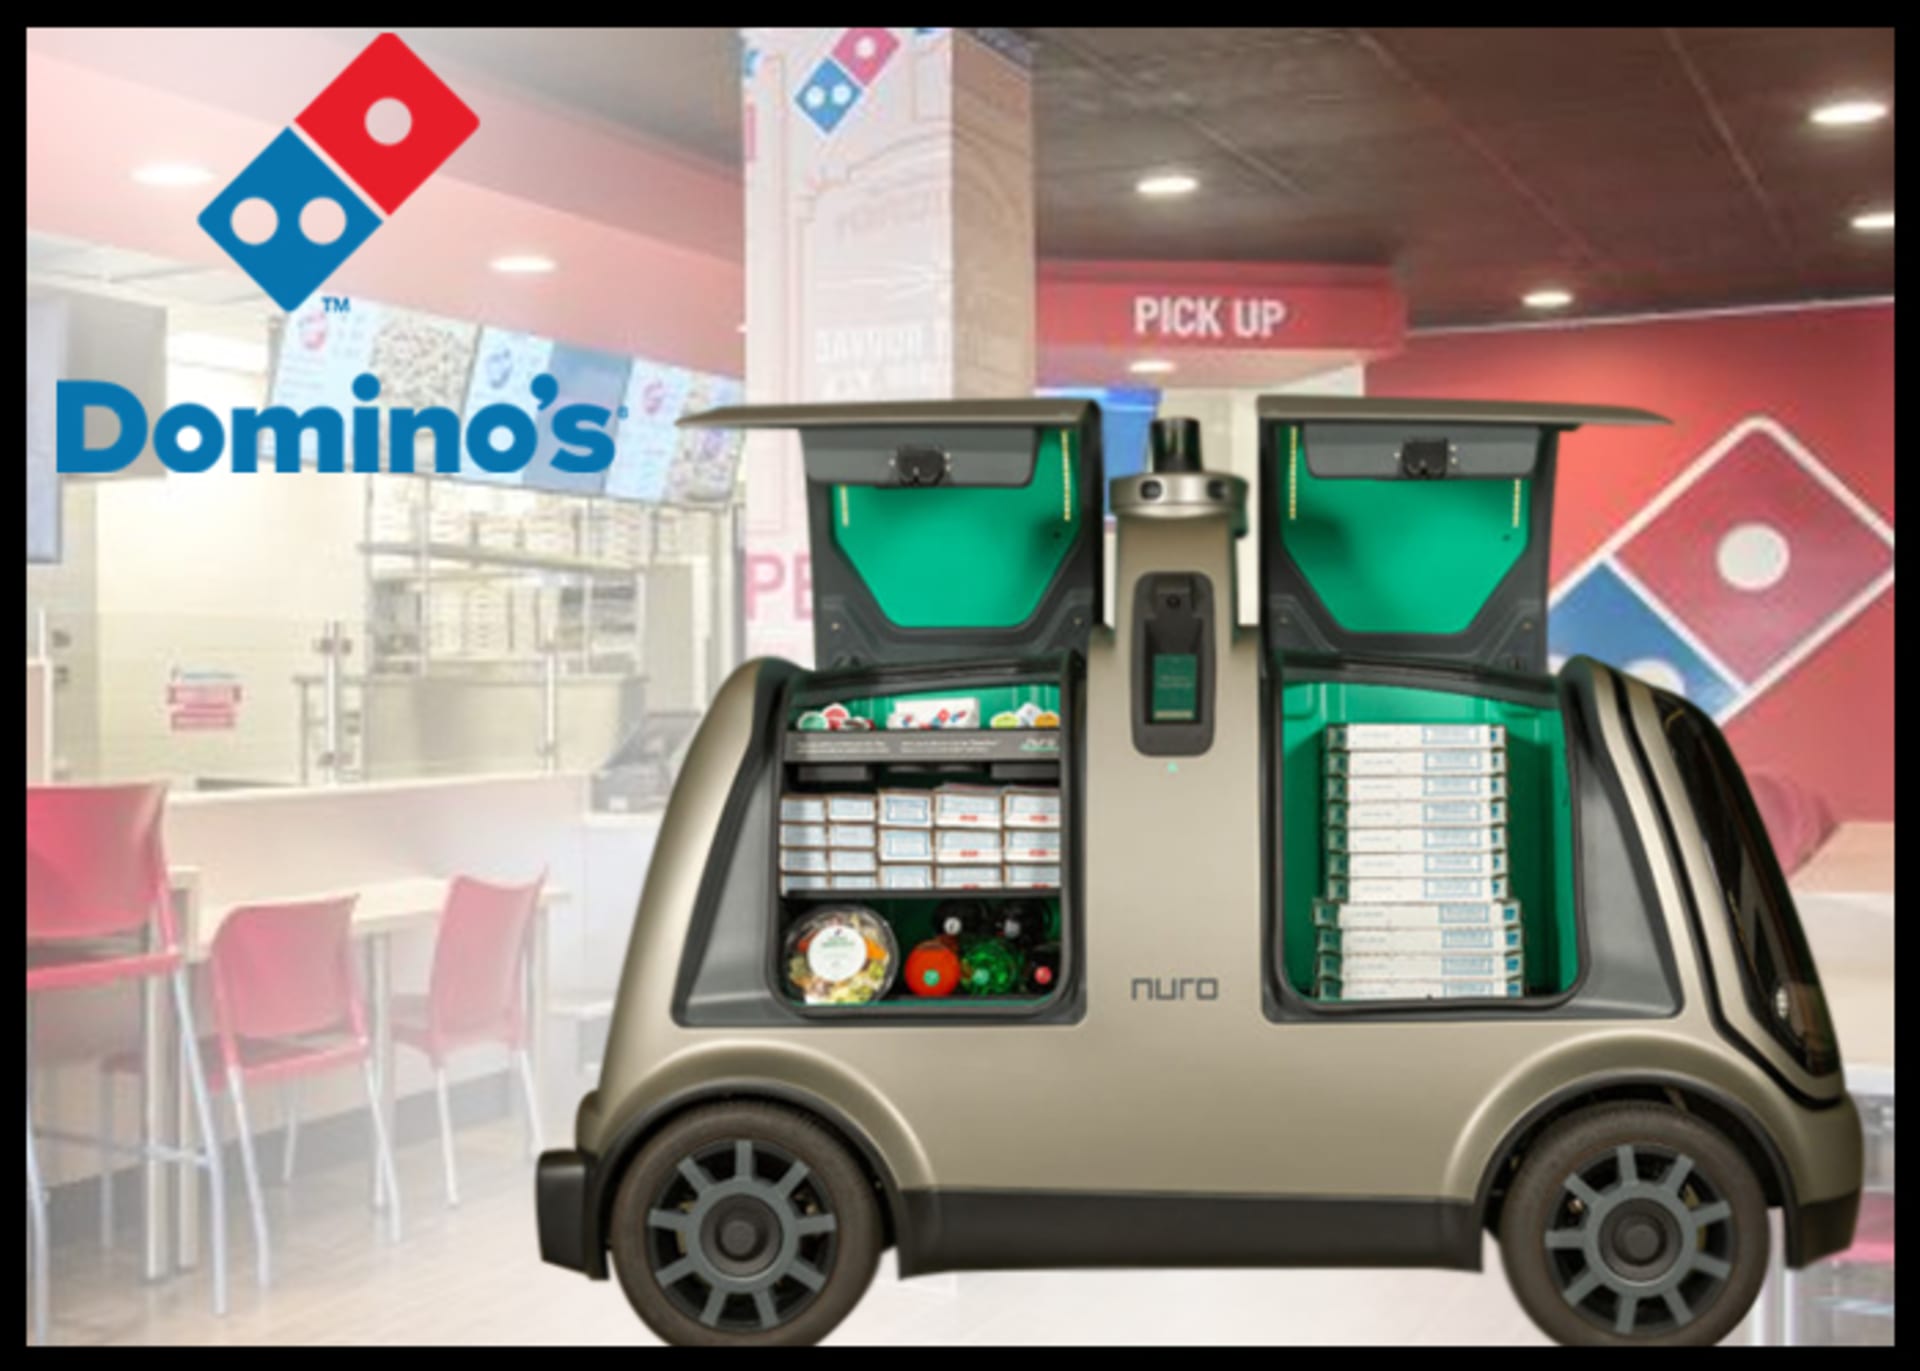 Nuro vozítko v úpravě pro Domino's Pizza